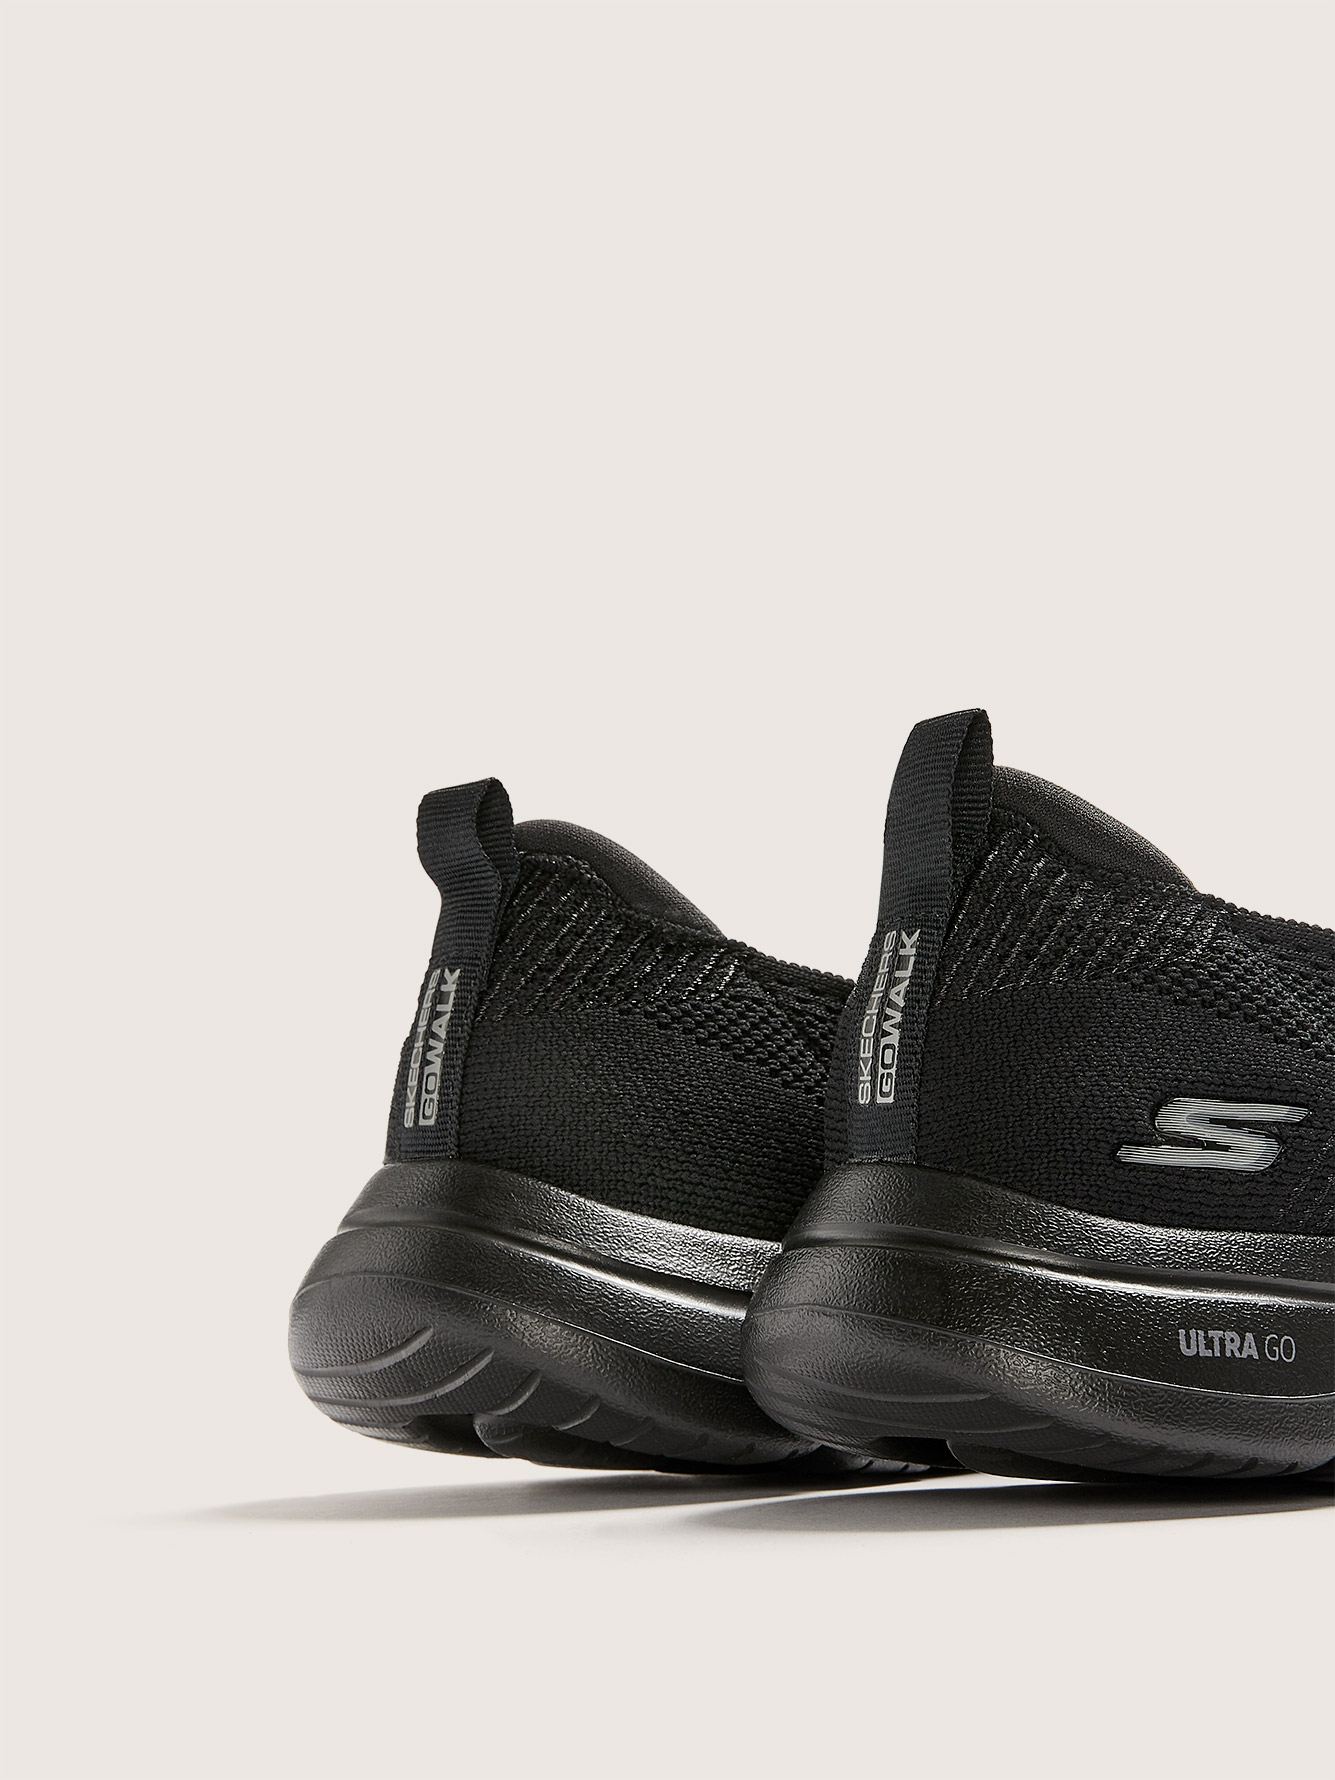 skechers black slip on sneakers